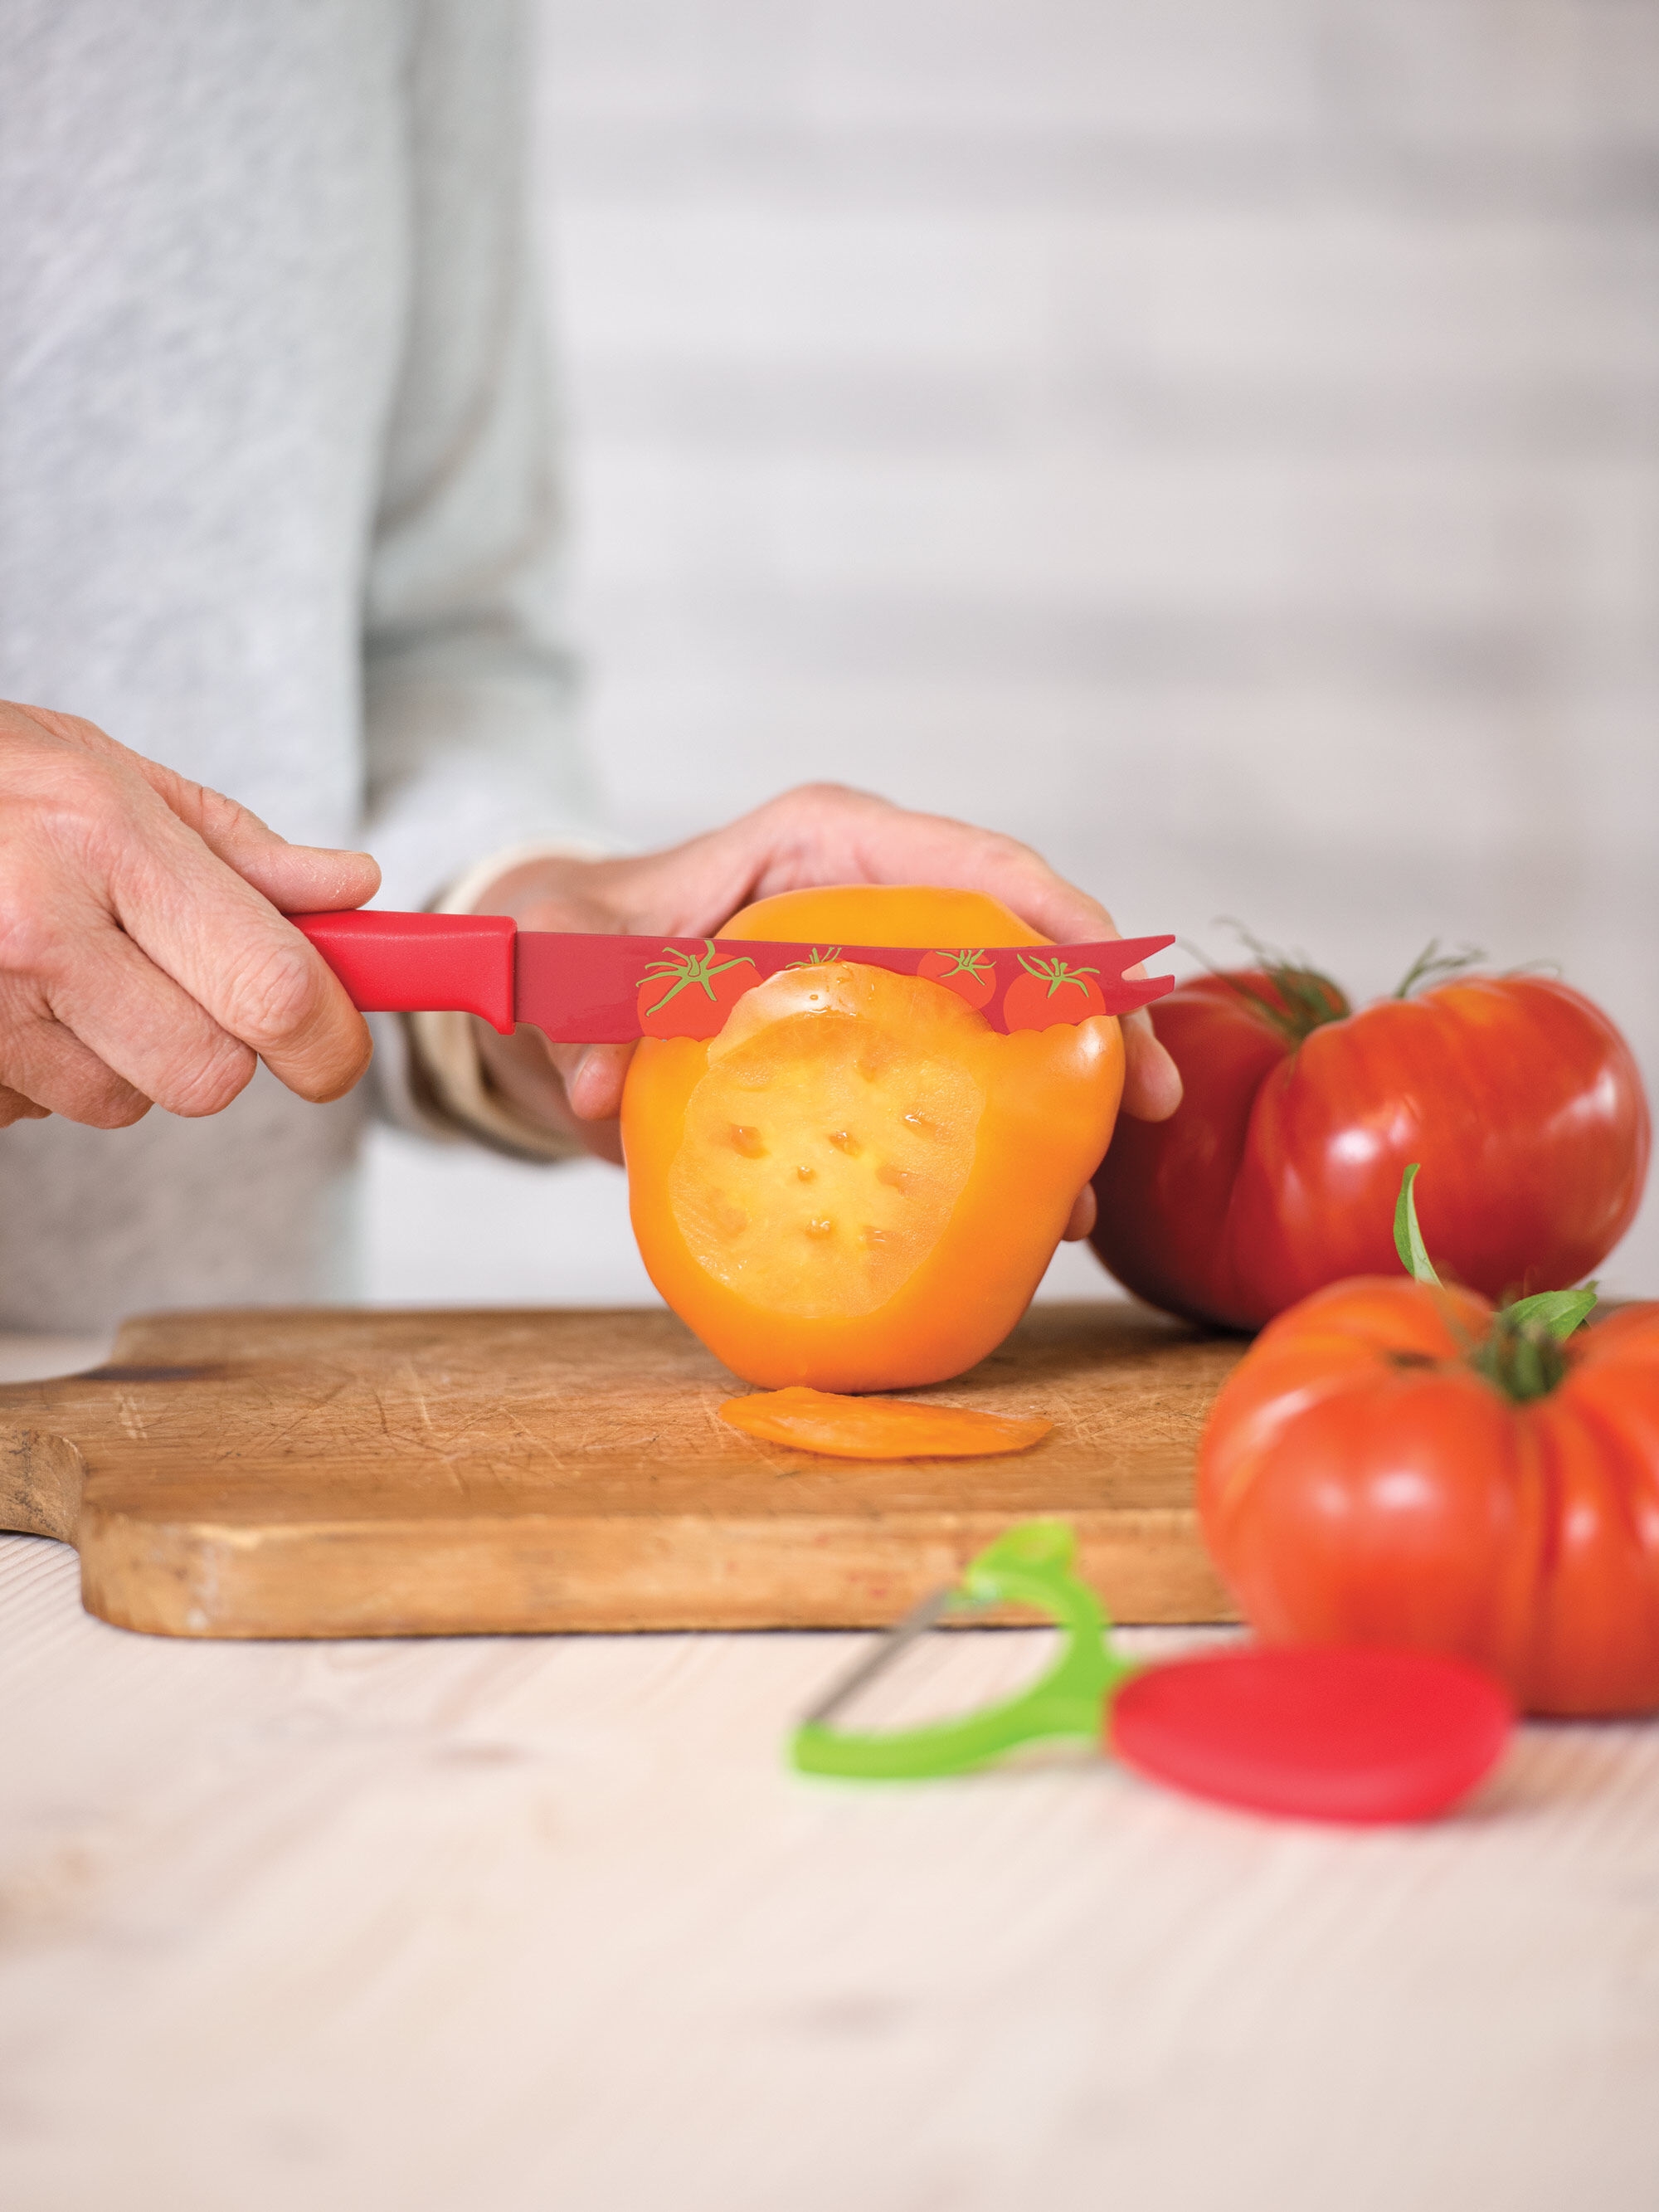 https://www.gardeners.com/globalassets/product-media-catalog/8597/900-999/8597957/8597957_2717_total-tomato-knife-and-peeler-set.jpg